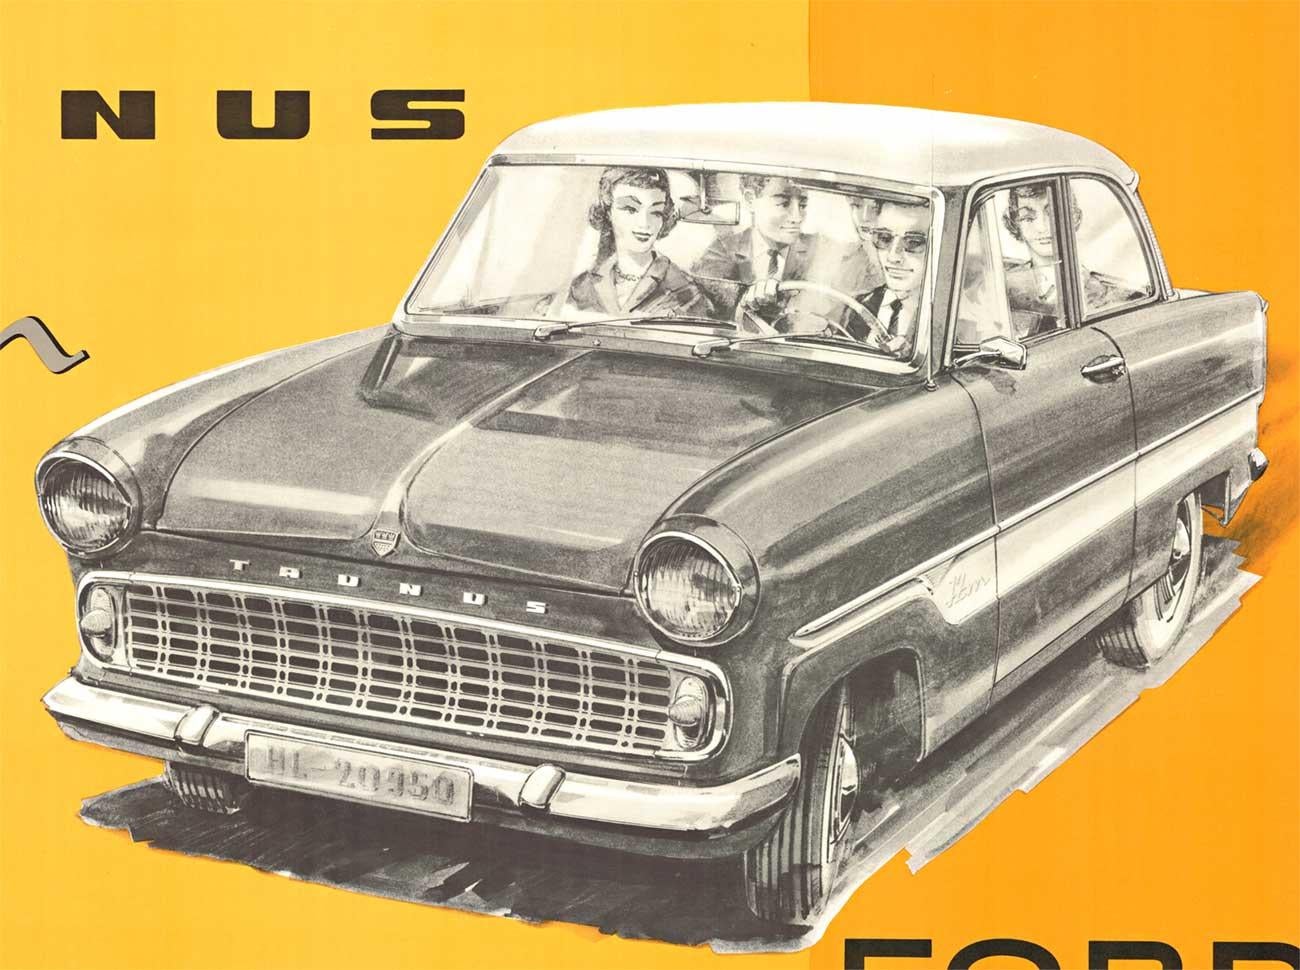 Original Ford of Germany, The All New Taunus 12M Super vintage german antique poster.  Archiviert Leinen gesichert om ausgezeichneten Zustand und bereit zu rahmen. Es ist uns nicht gelungen, eine andere Kopie dieses Plakats zu finden.

Der Taunus